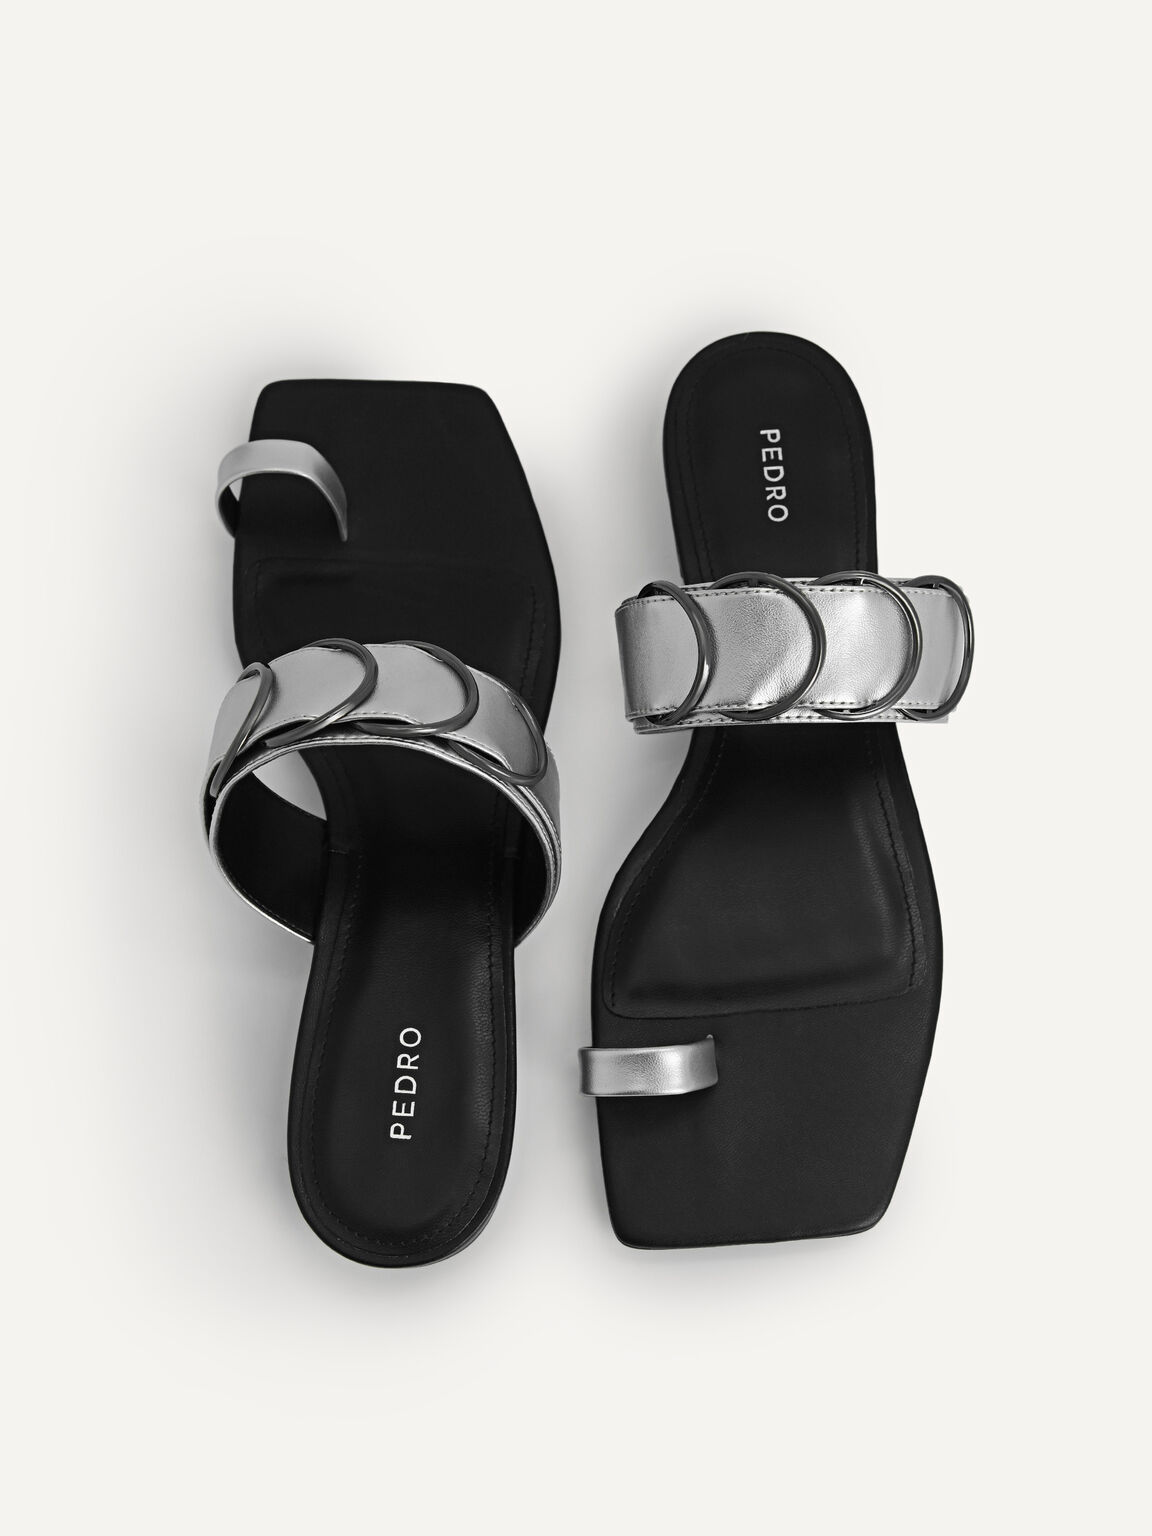 Metallic Toe Loop Sandals, Silver